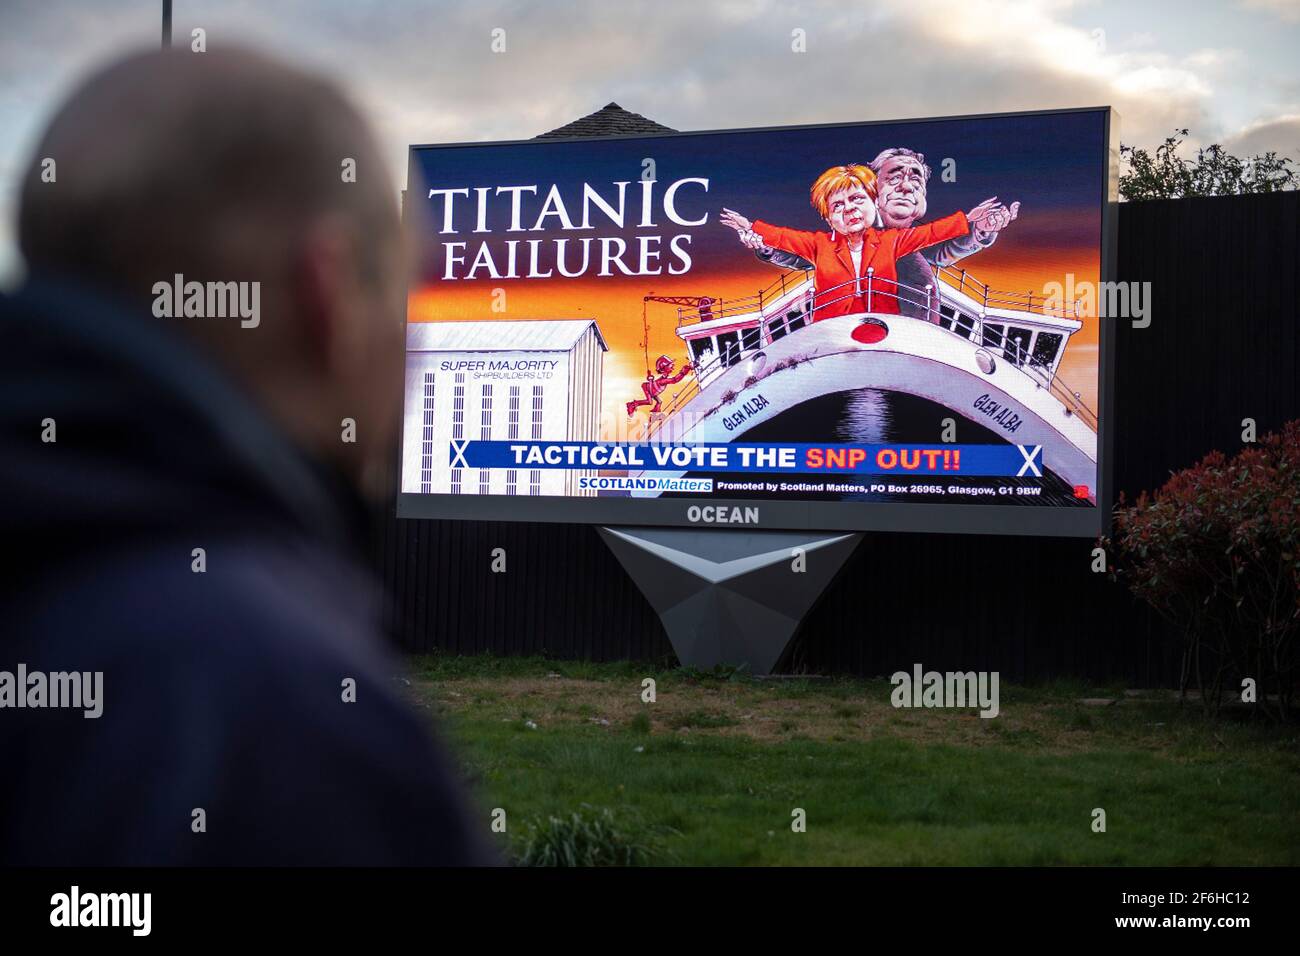 Glasgow, Schottland, Großbritannien. April 2021. IM BILD: Eine riesige elektronische Plakatwand, auf der eine Grafik mit dem Titel „TITANIC FAILURES“ und „TACTICAL VOTEE THE SNP OUT“ abgebildet ist, mit Comic-Figuren von Nicola Sturgeon und Alex Salmond, die die berühmte Szene aus dem Titanic am Bug nachspielen, aber stattdessen auf der Fähre von Glen Alba. Pressemitteilung Link: https://www.scotlandmatters.co.uk/titanicfailurebillboard/ Artikel Link: https://www.bbc.co.uk/news/amp/uk-scotland-glasgow-west-56579158?  twitter impression=true&s=03 Quelle: Colin Fisher/Alamy Live News. Stockfoto